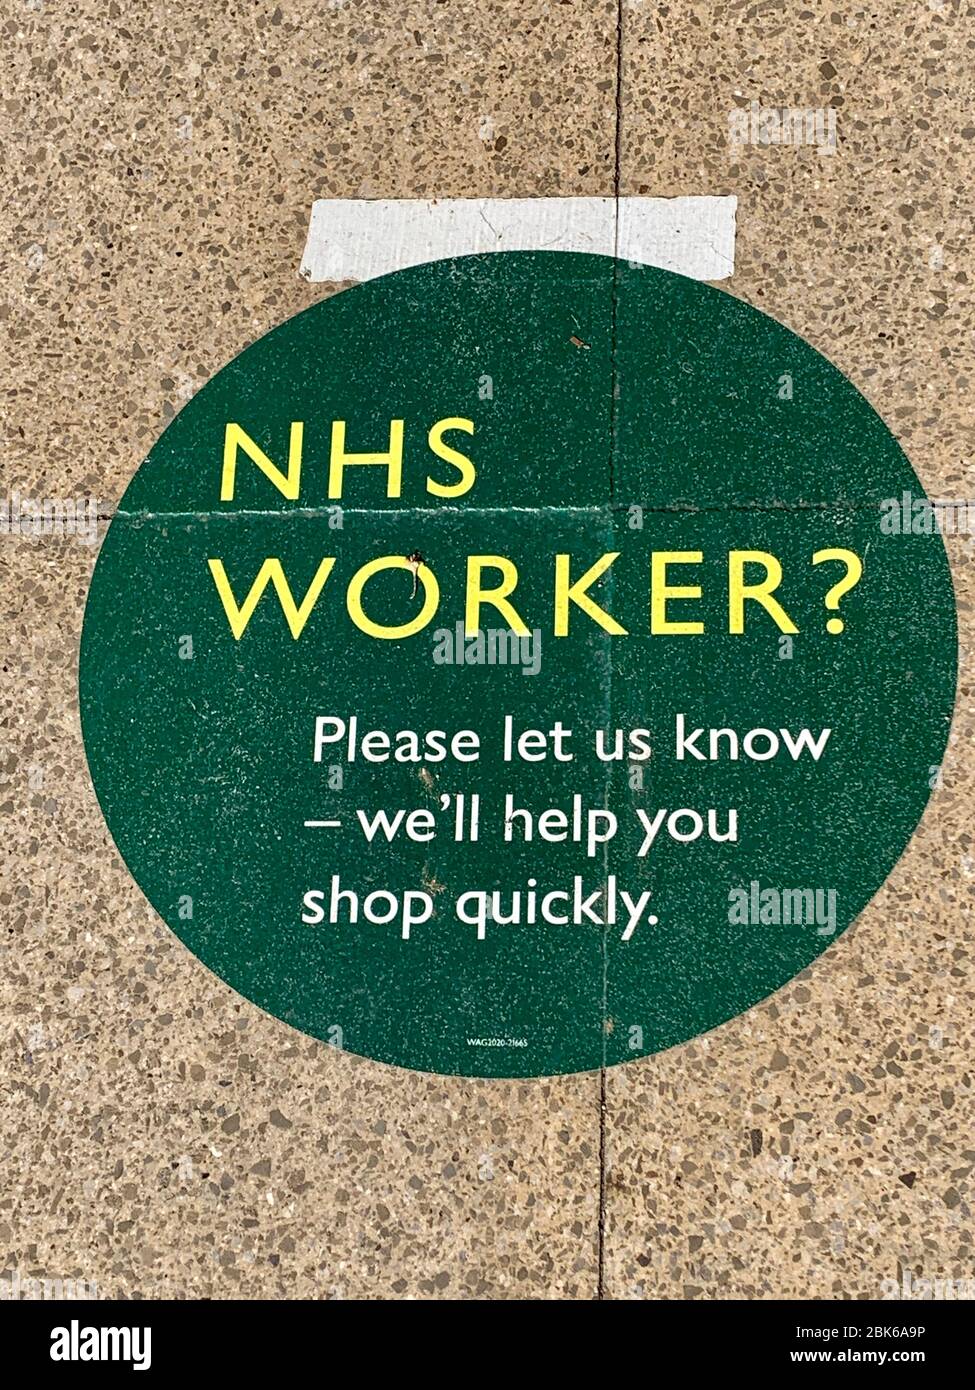 NHS trabajador (trabajador clave) tienda rápidamente firmar en el piso fuera de Waitrose Supermarket en respuesta a covid-19 coronavirus pandemia Foto de stock